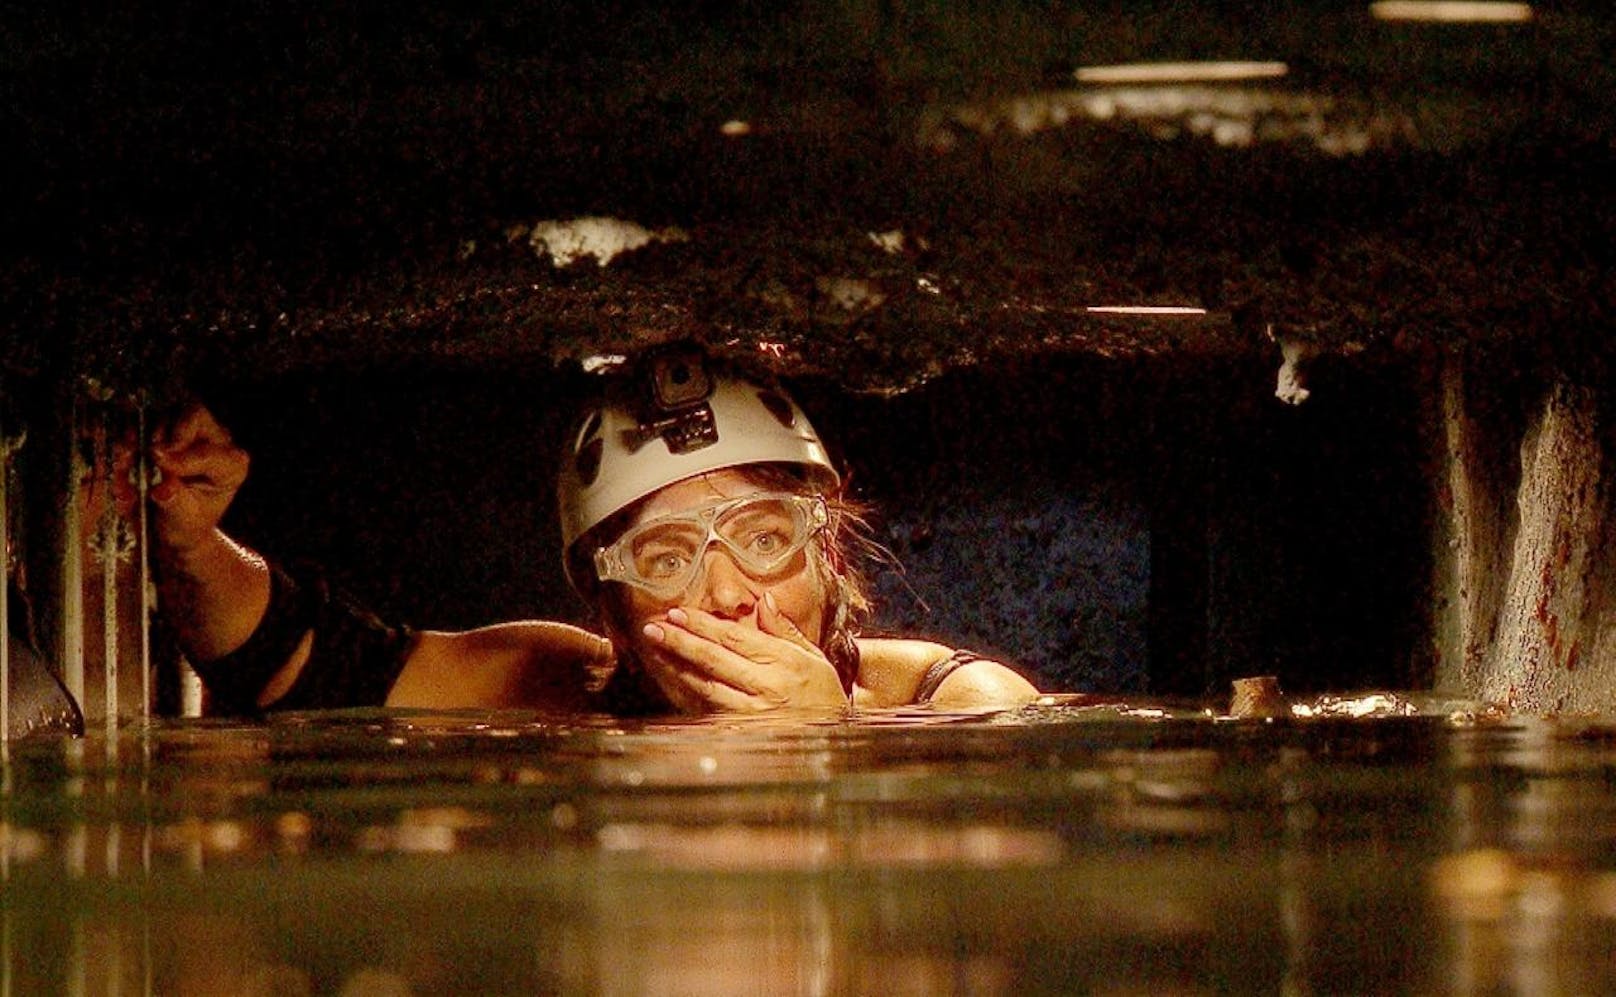 Tag 2 - Dschungelprüfung "Grauen Under". Danni Büchner steigt in den Wassertunnel hinab und kommt an ihre psychischen Grenzen.